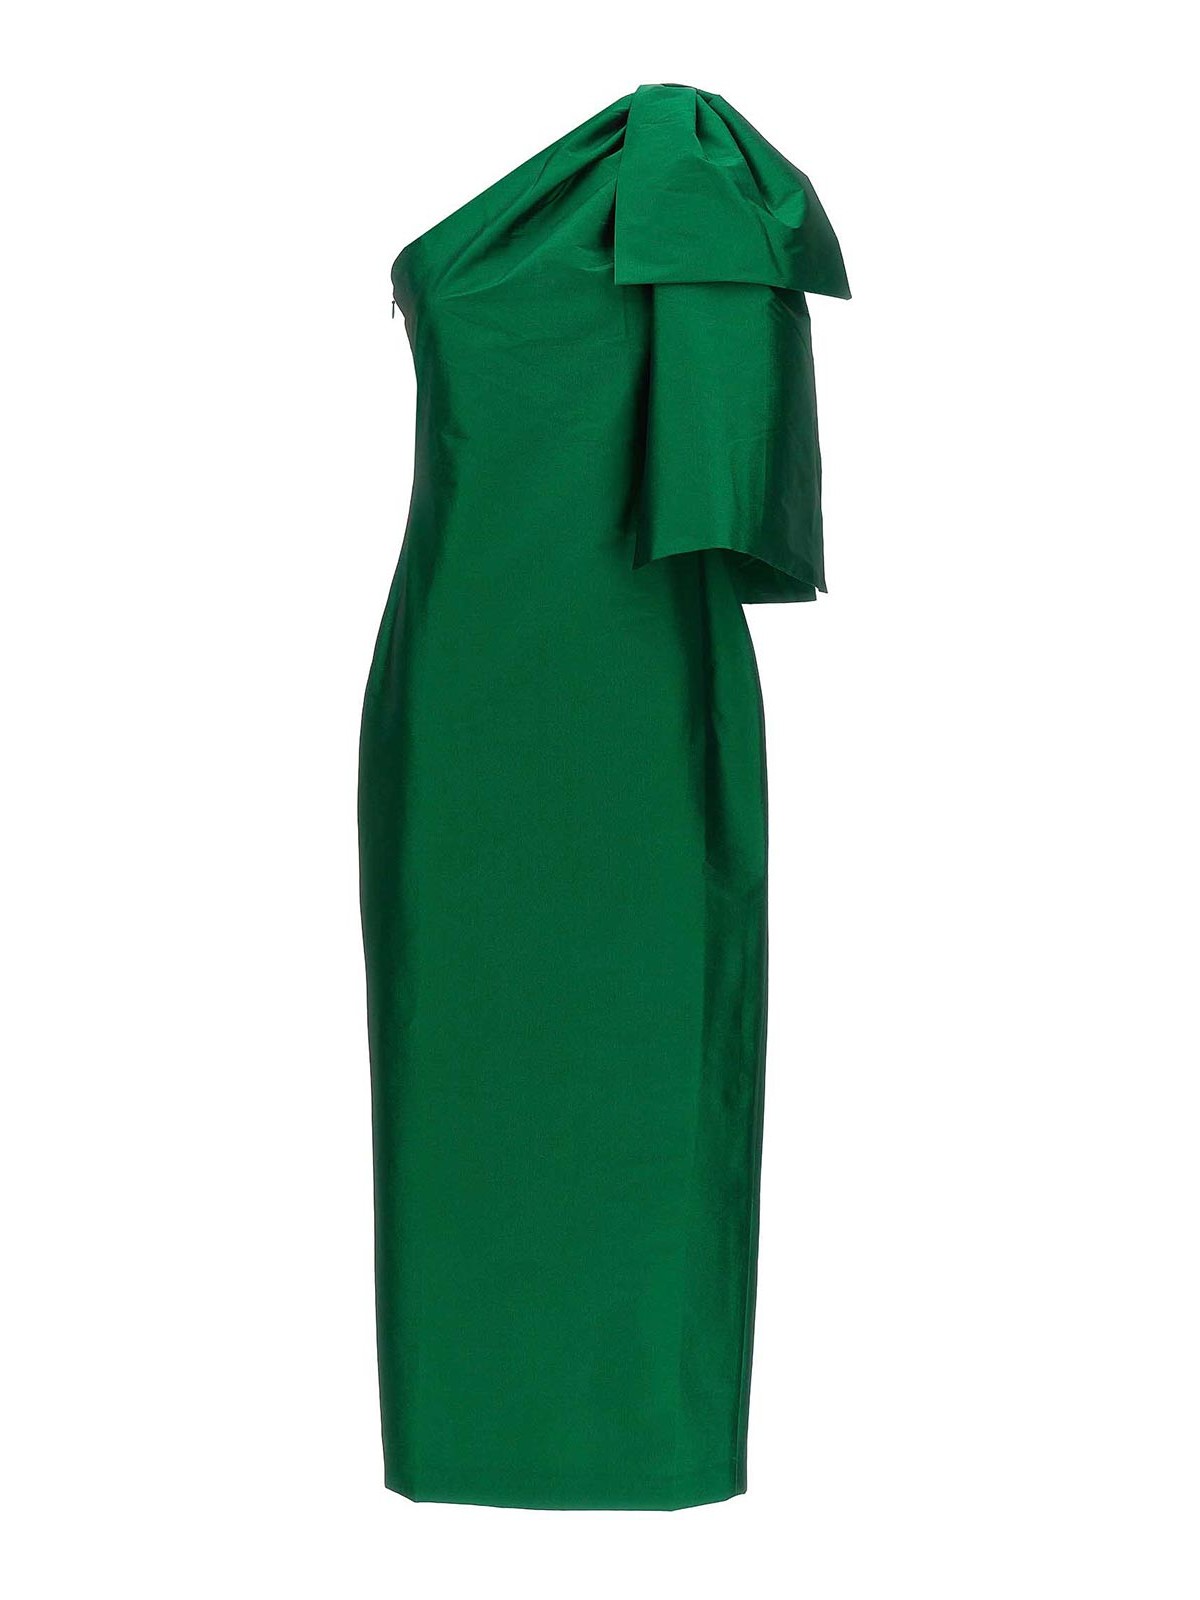 Bernadette Josselin Dress In Green